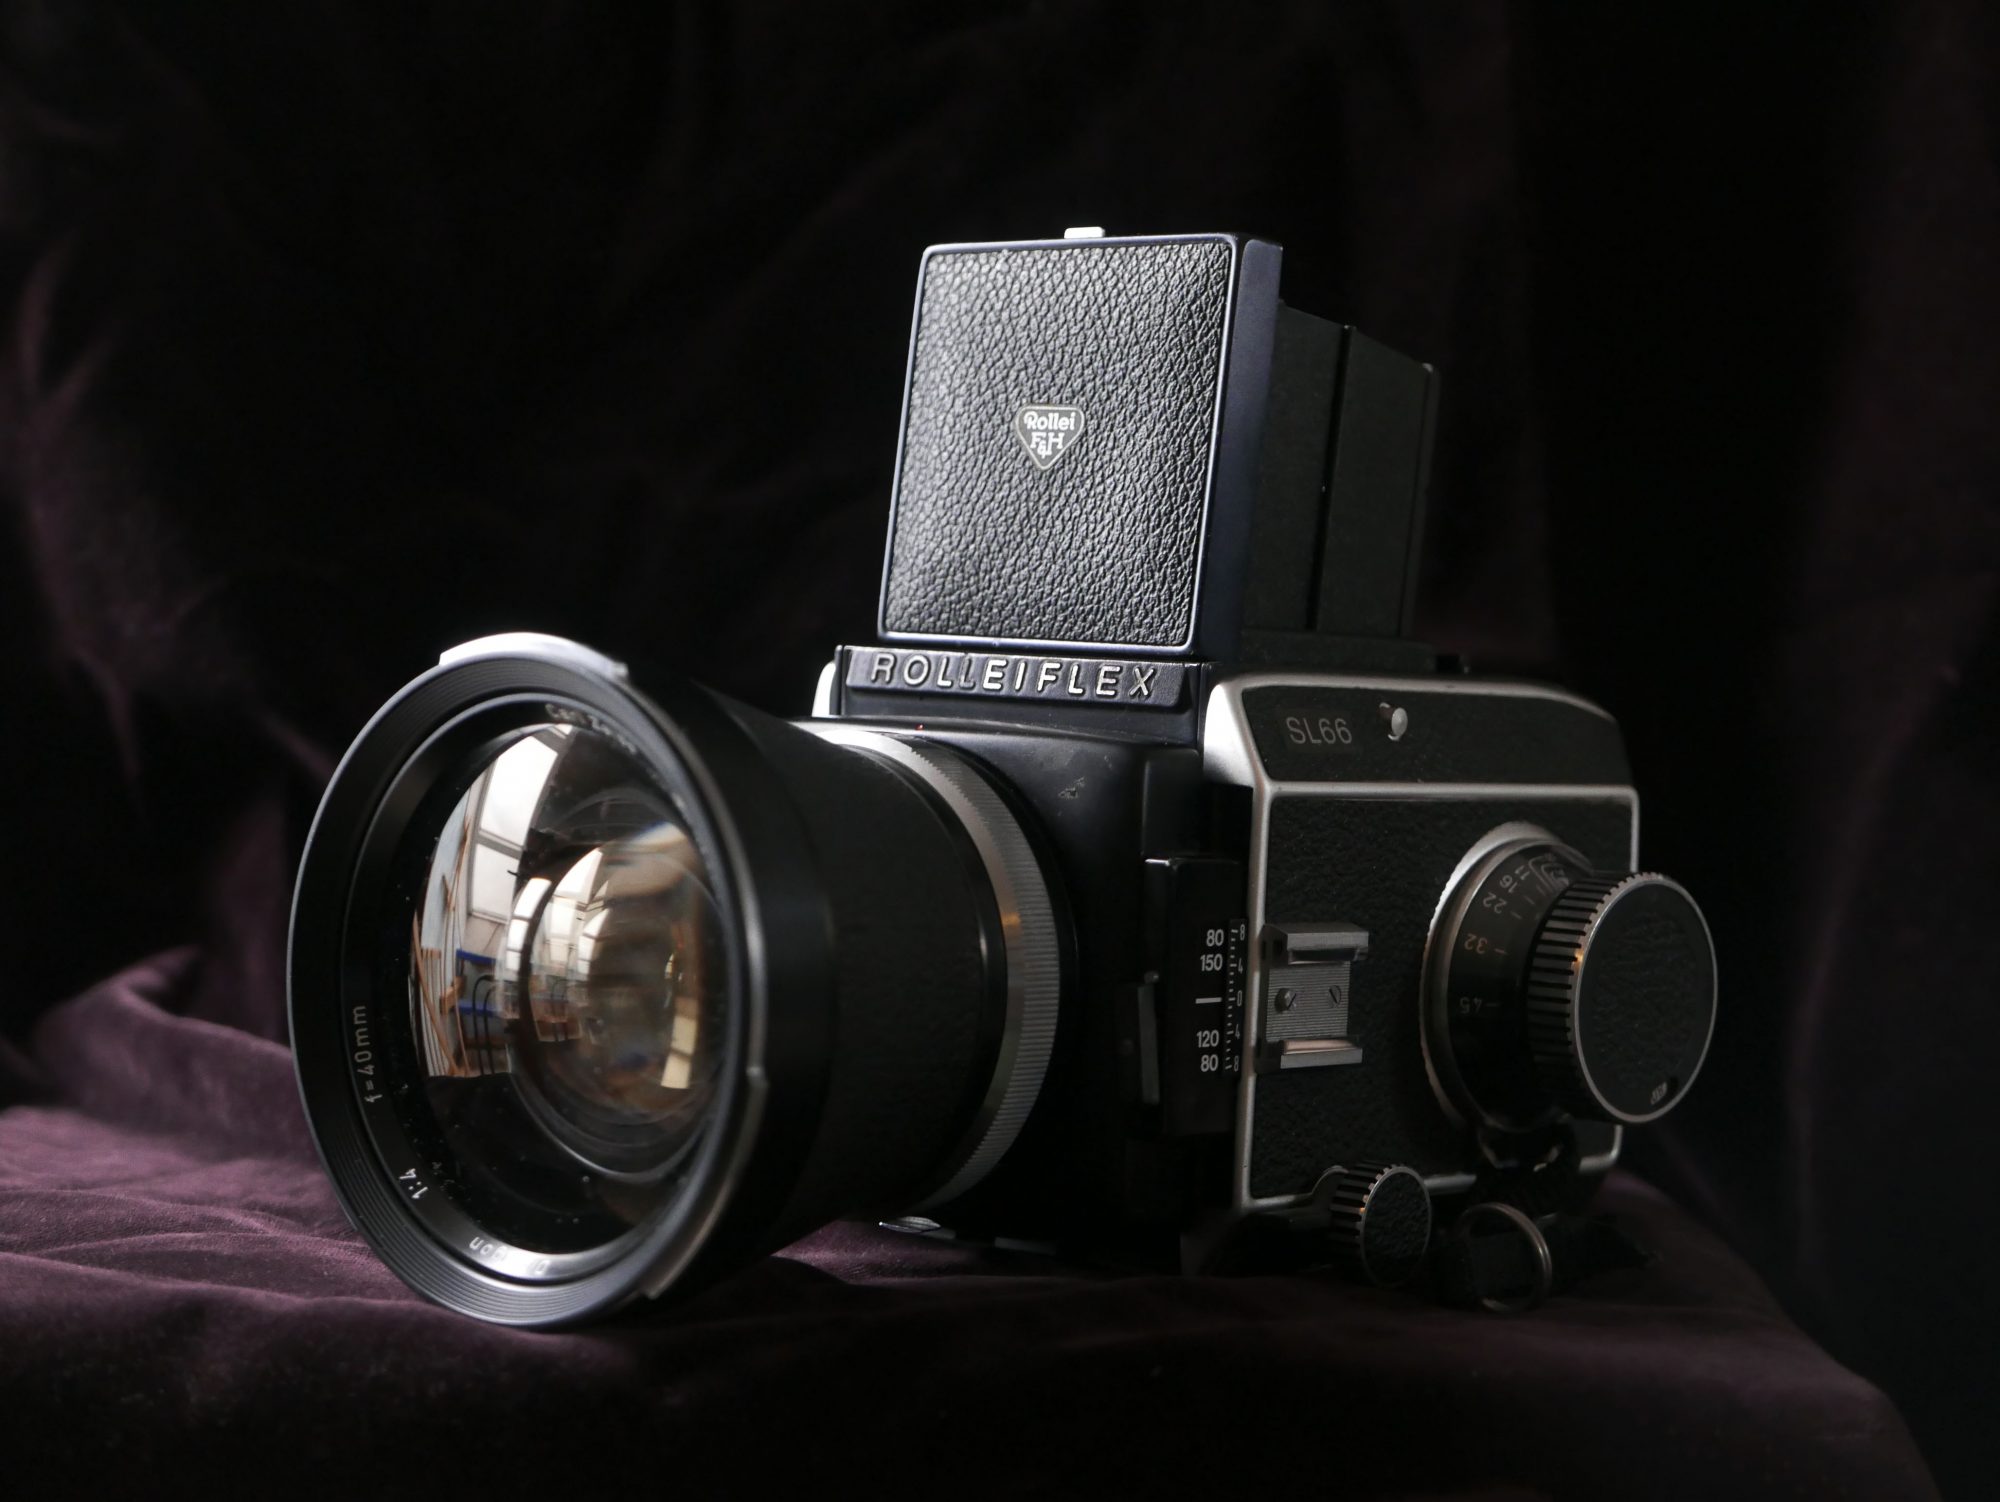 The Rolleiflex SL66 (Pic: Nuno Pinheiro)